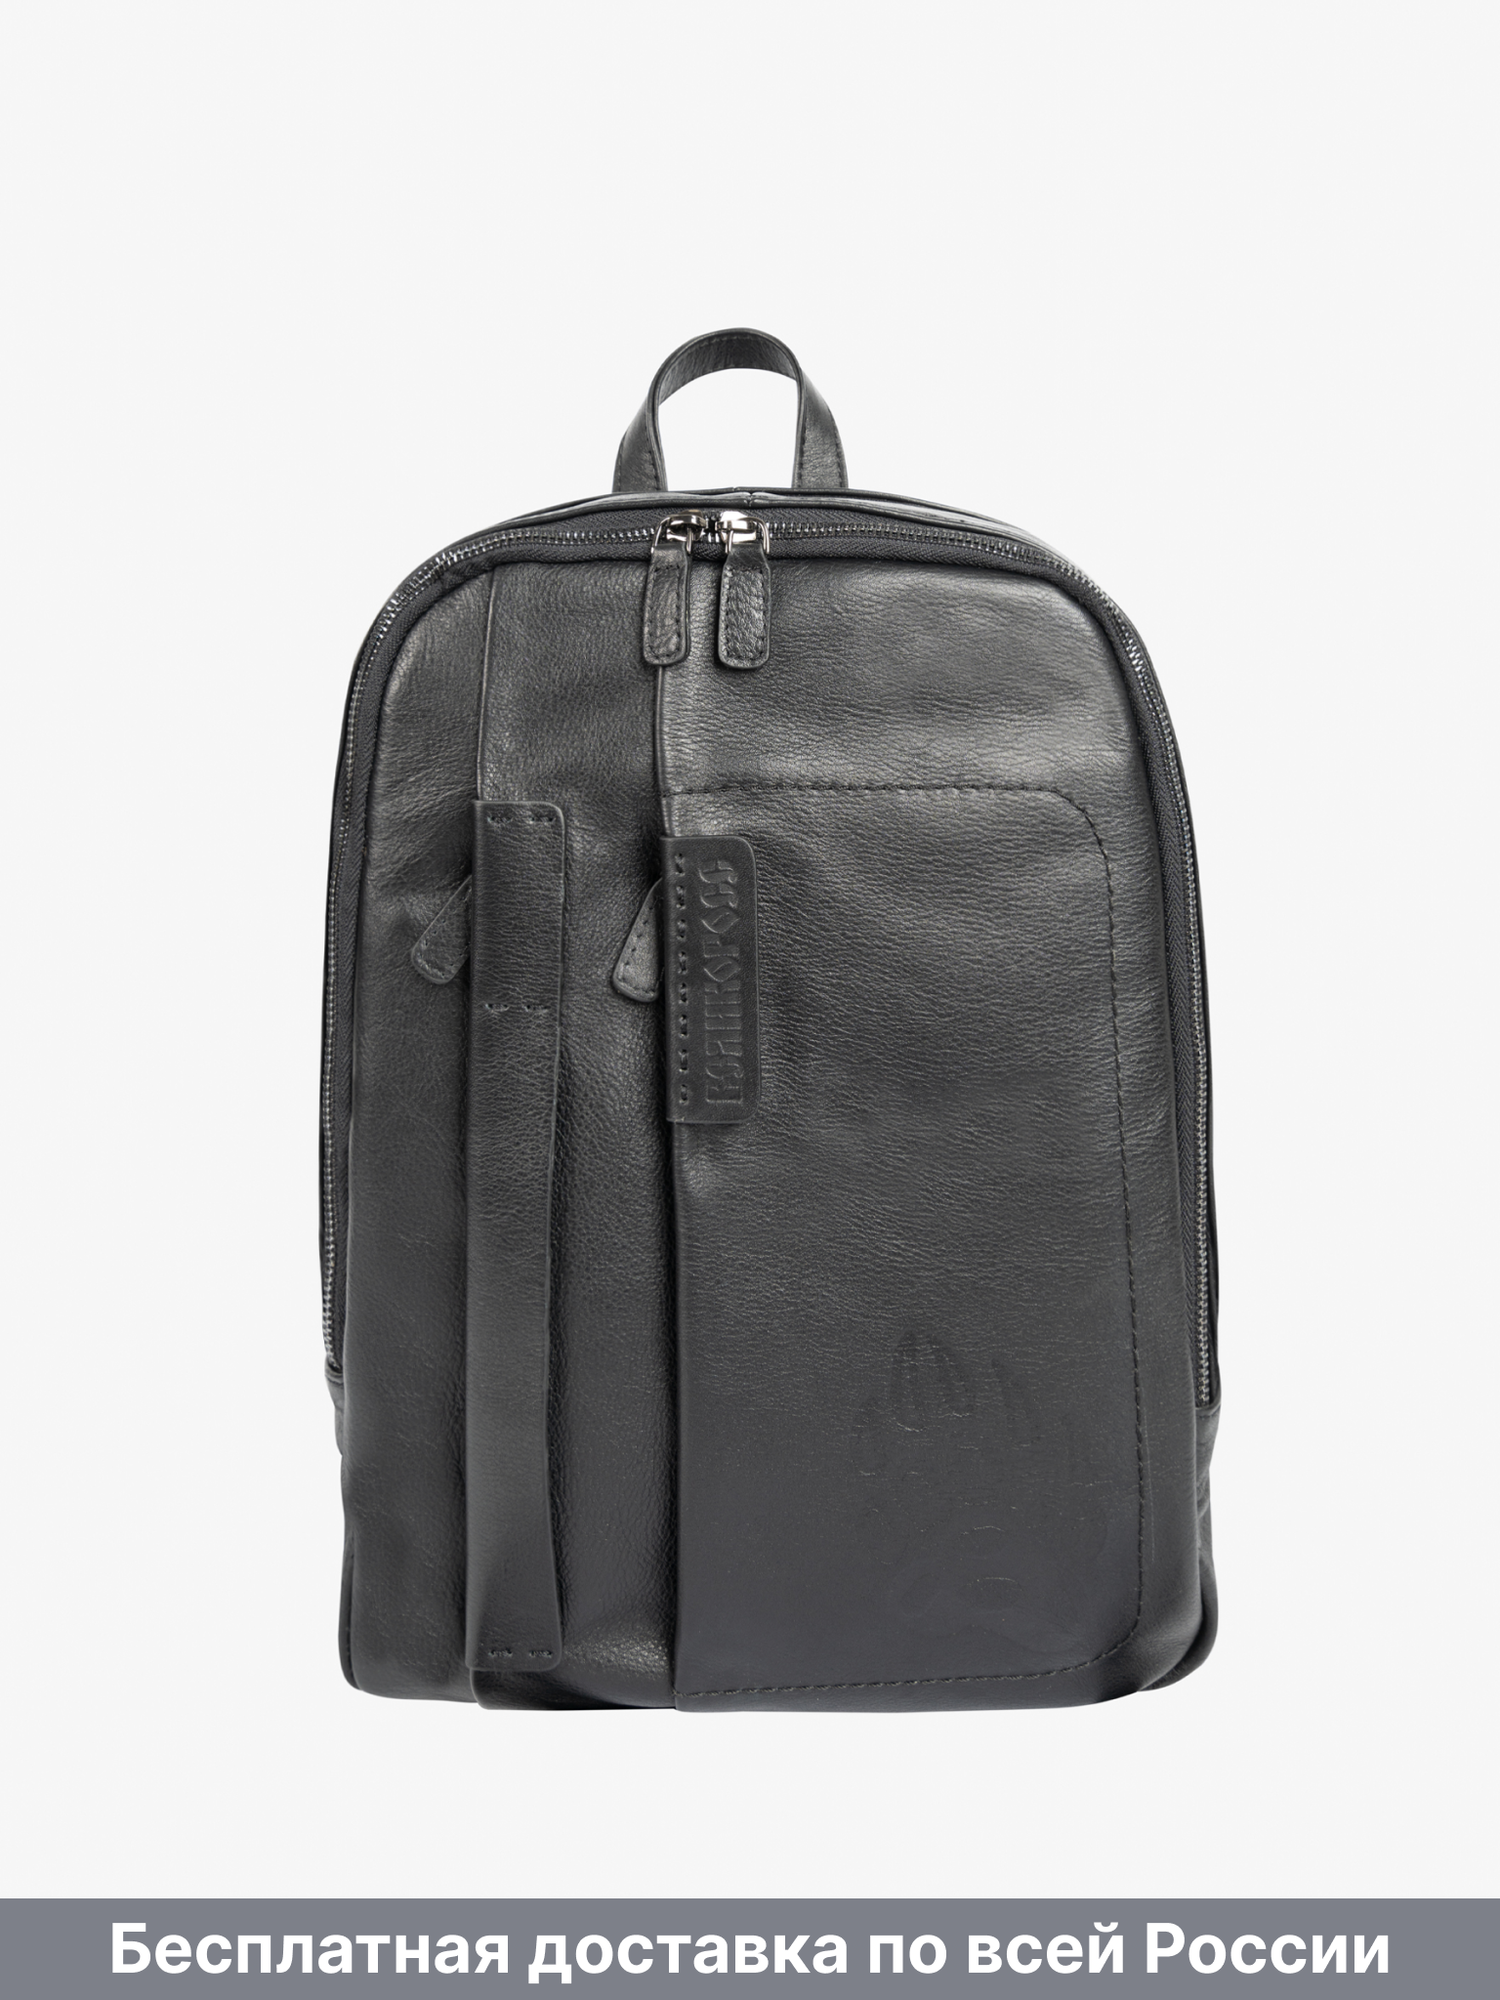 Кожаный рюкзак-компактный чёрного матового цвета